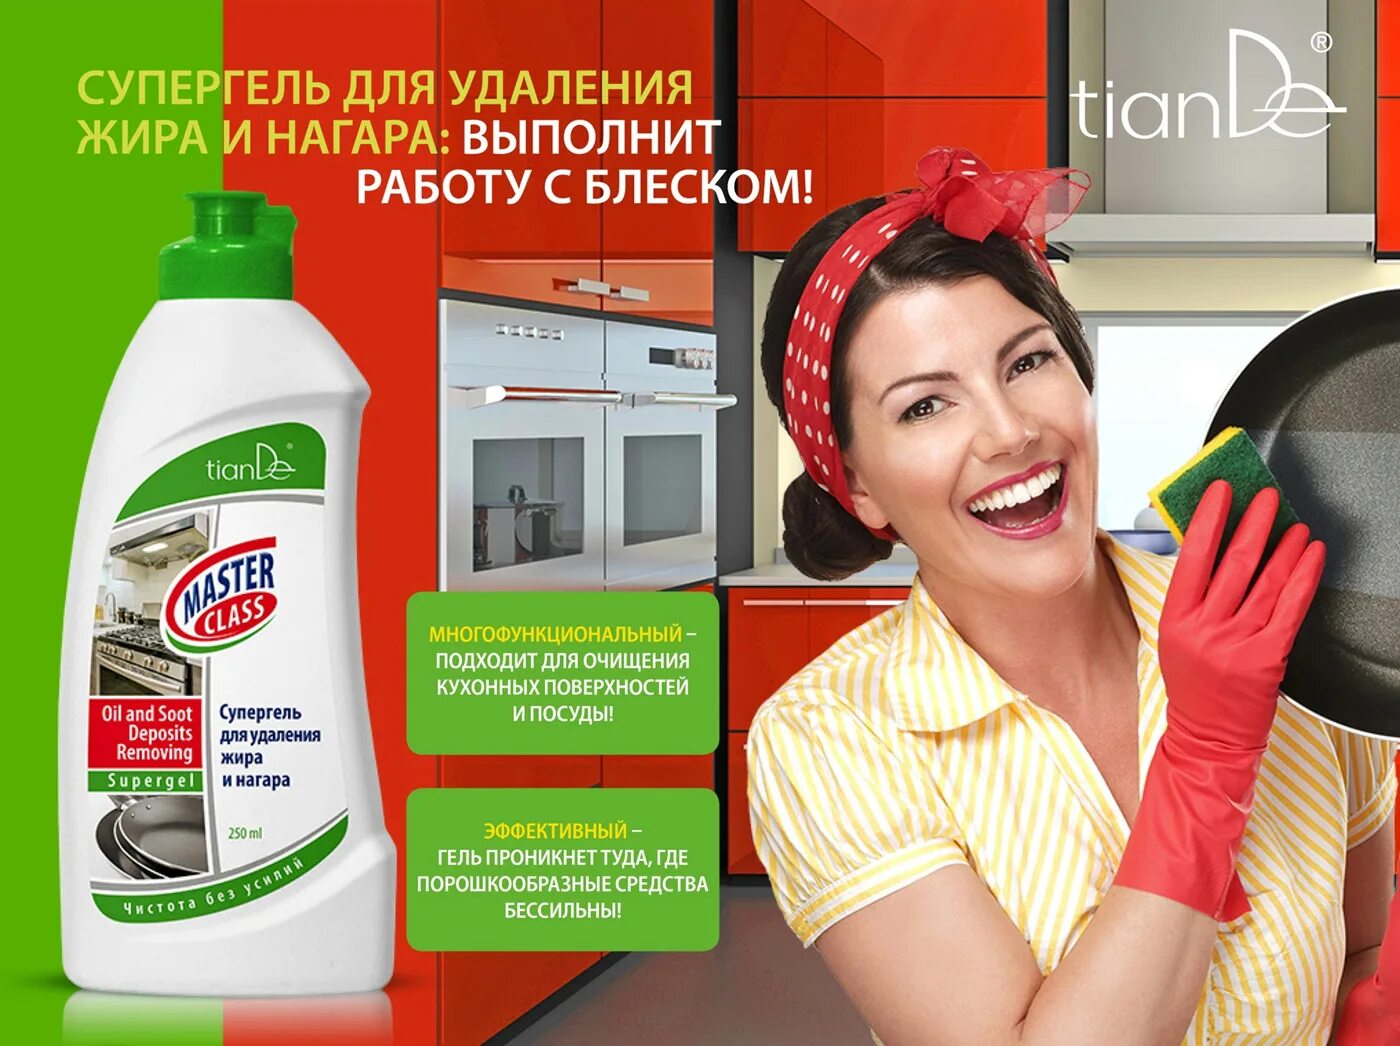 Чистящее интернет магазин. Реклама чистящего средства. Реклама моющих средств. Средство для мытья реклама. Удалитель жира и нагара.